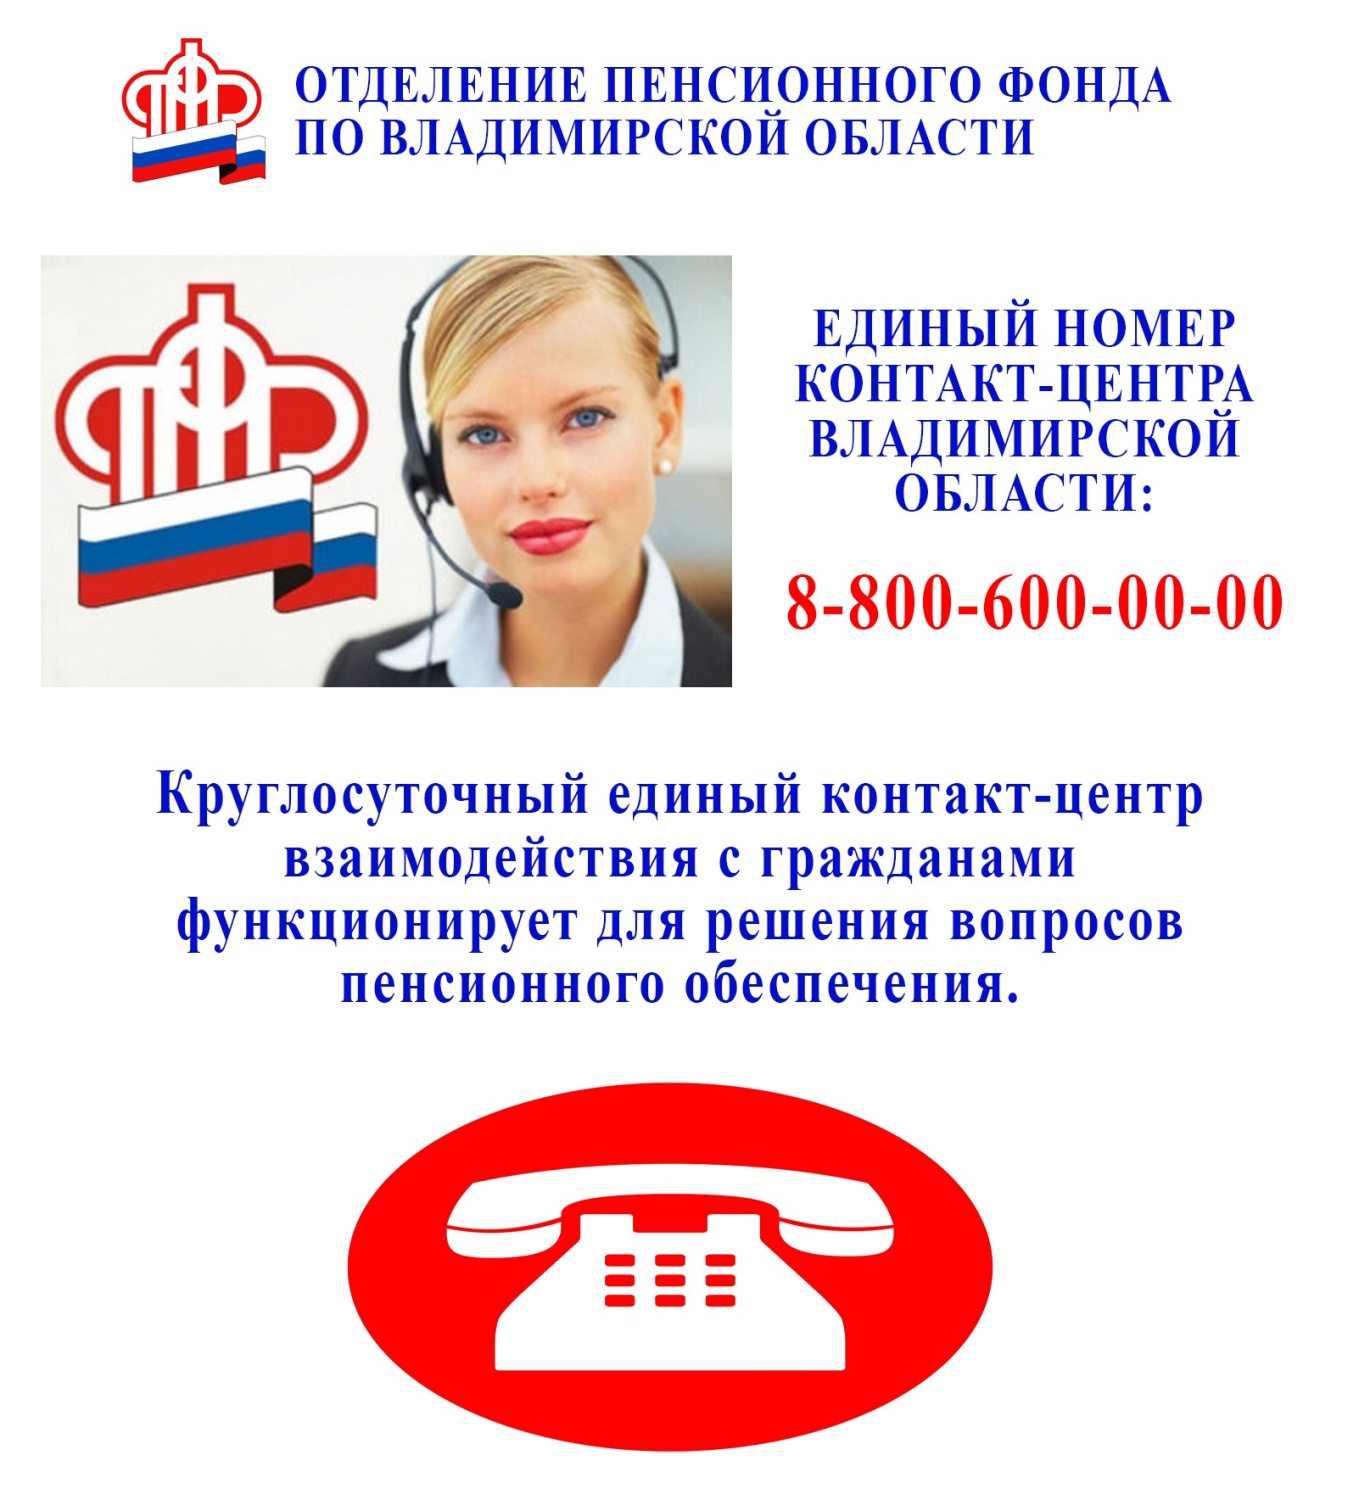 Телефон горячей линии пенсионного фонда иркутской